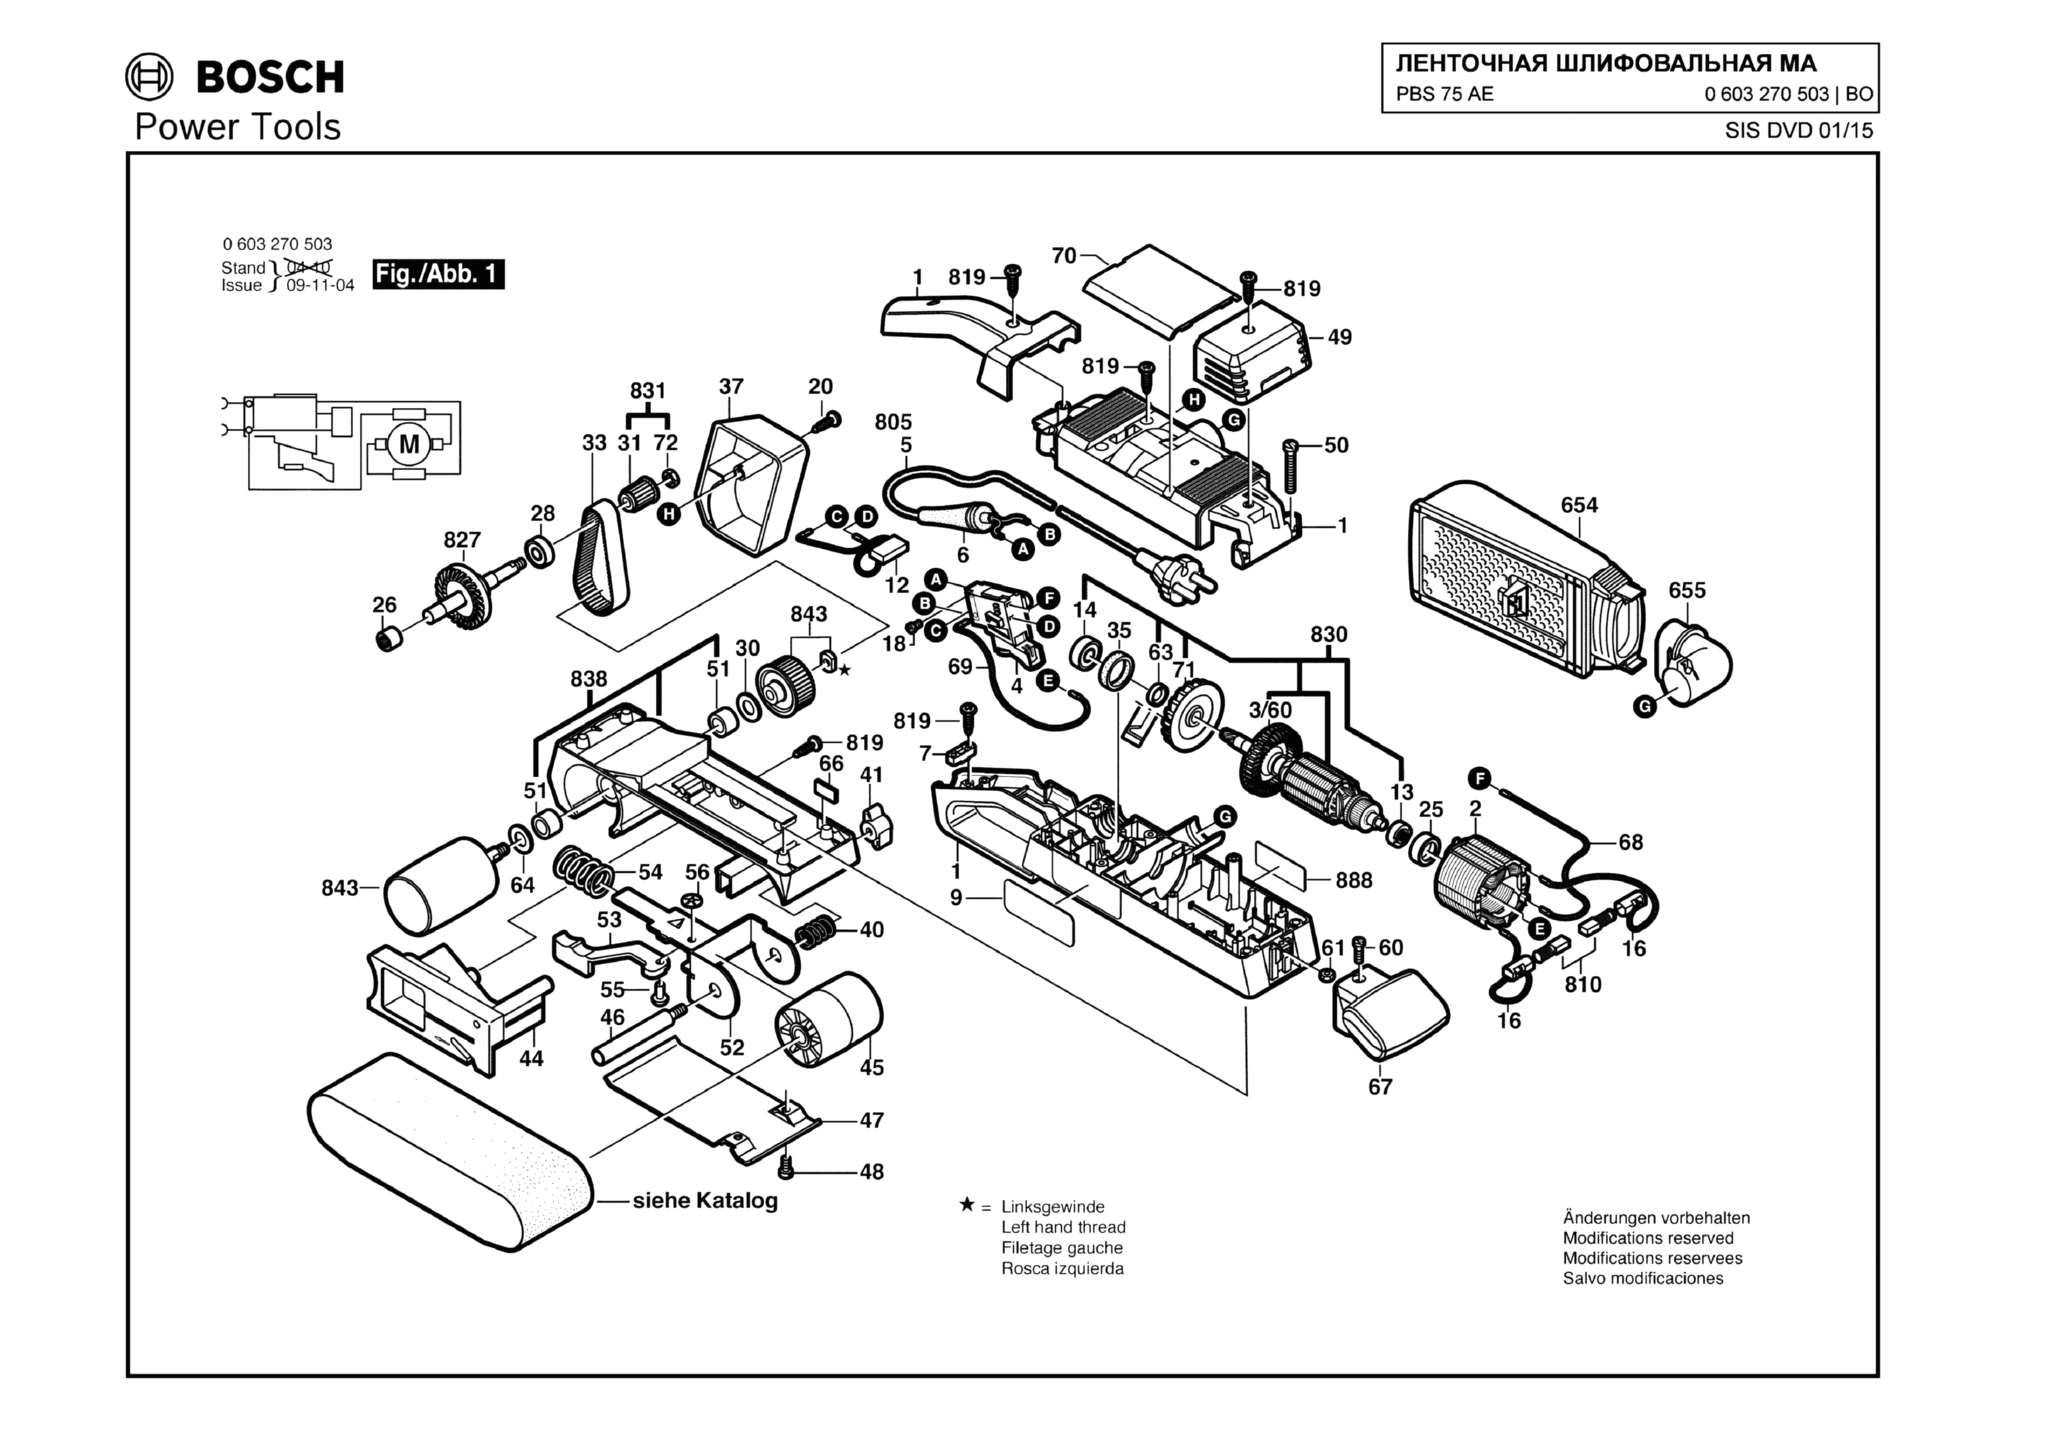 Запчасти, схема и деталировка Bosch PBS 75 AE (ТИП 0603270503)